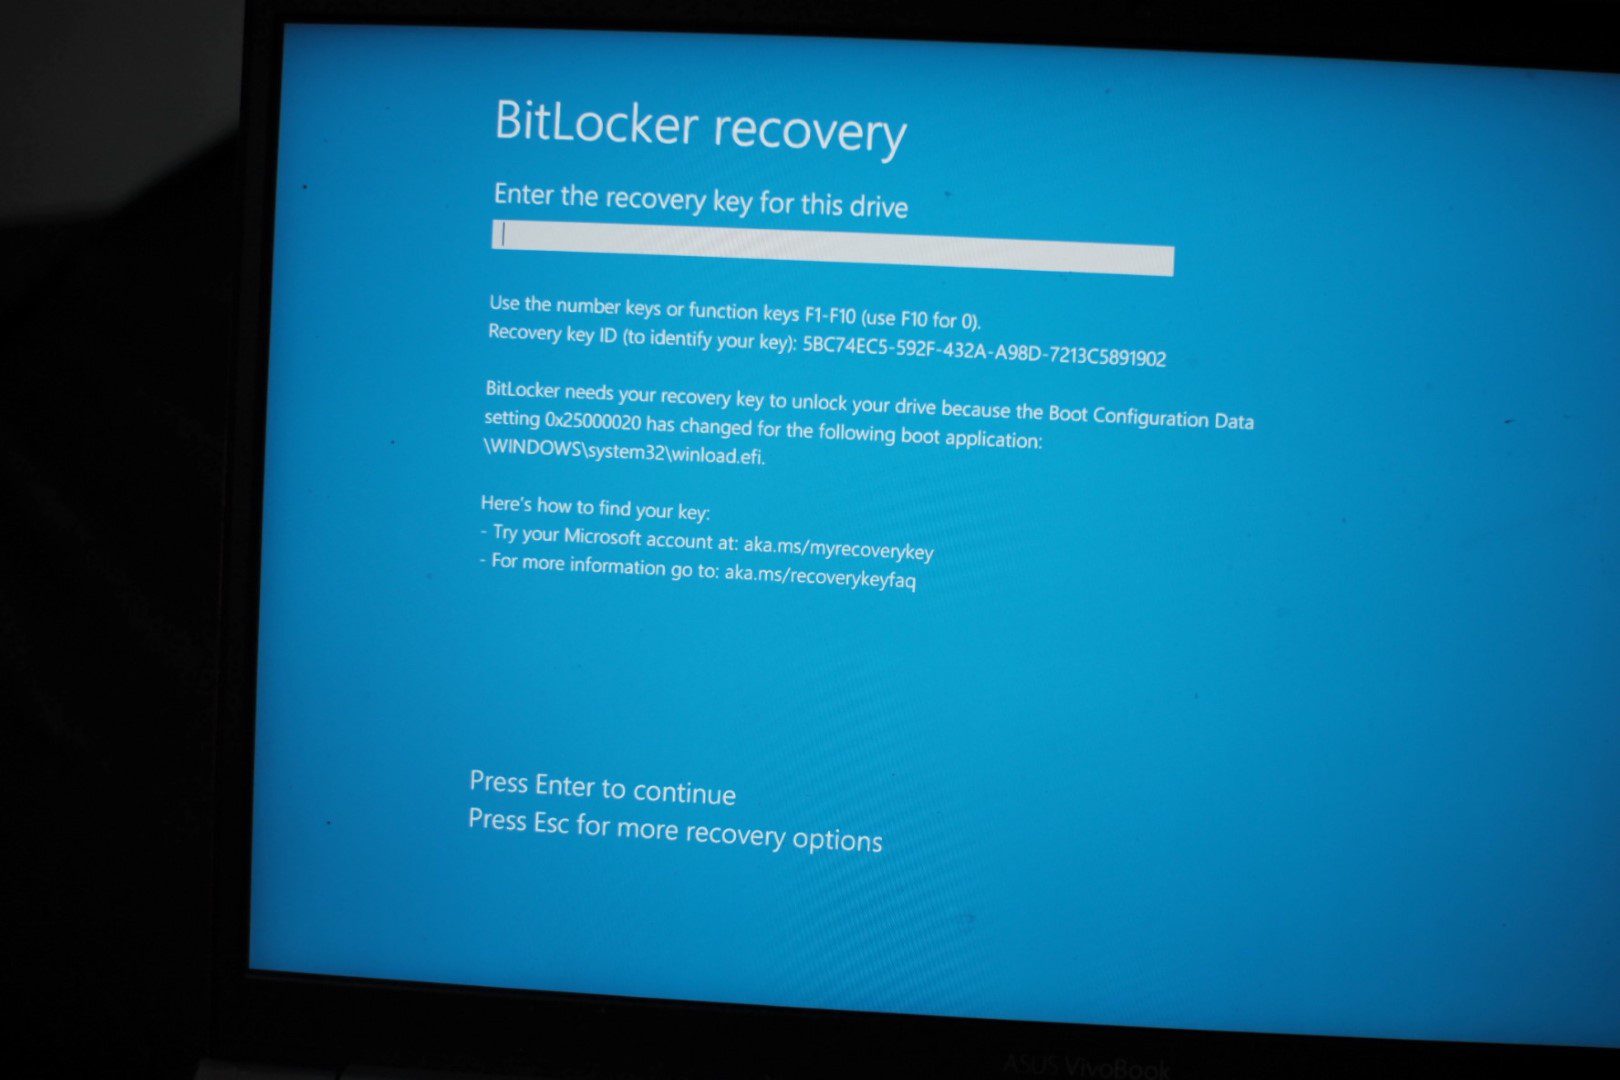 A cheap Raspberry Pi can break BitLocker, but not this way